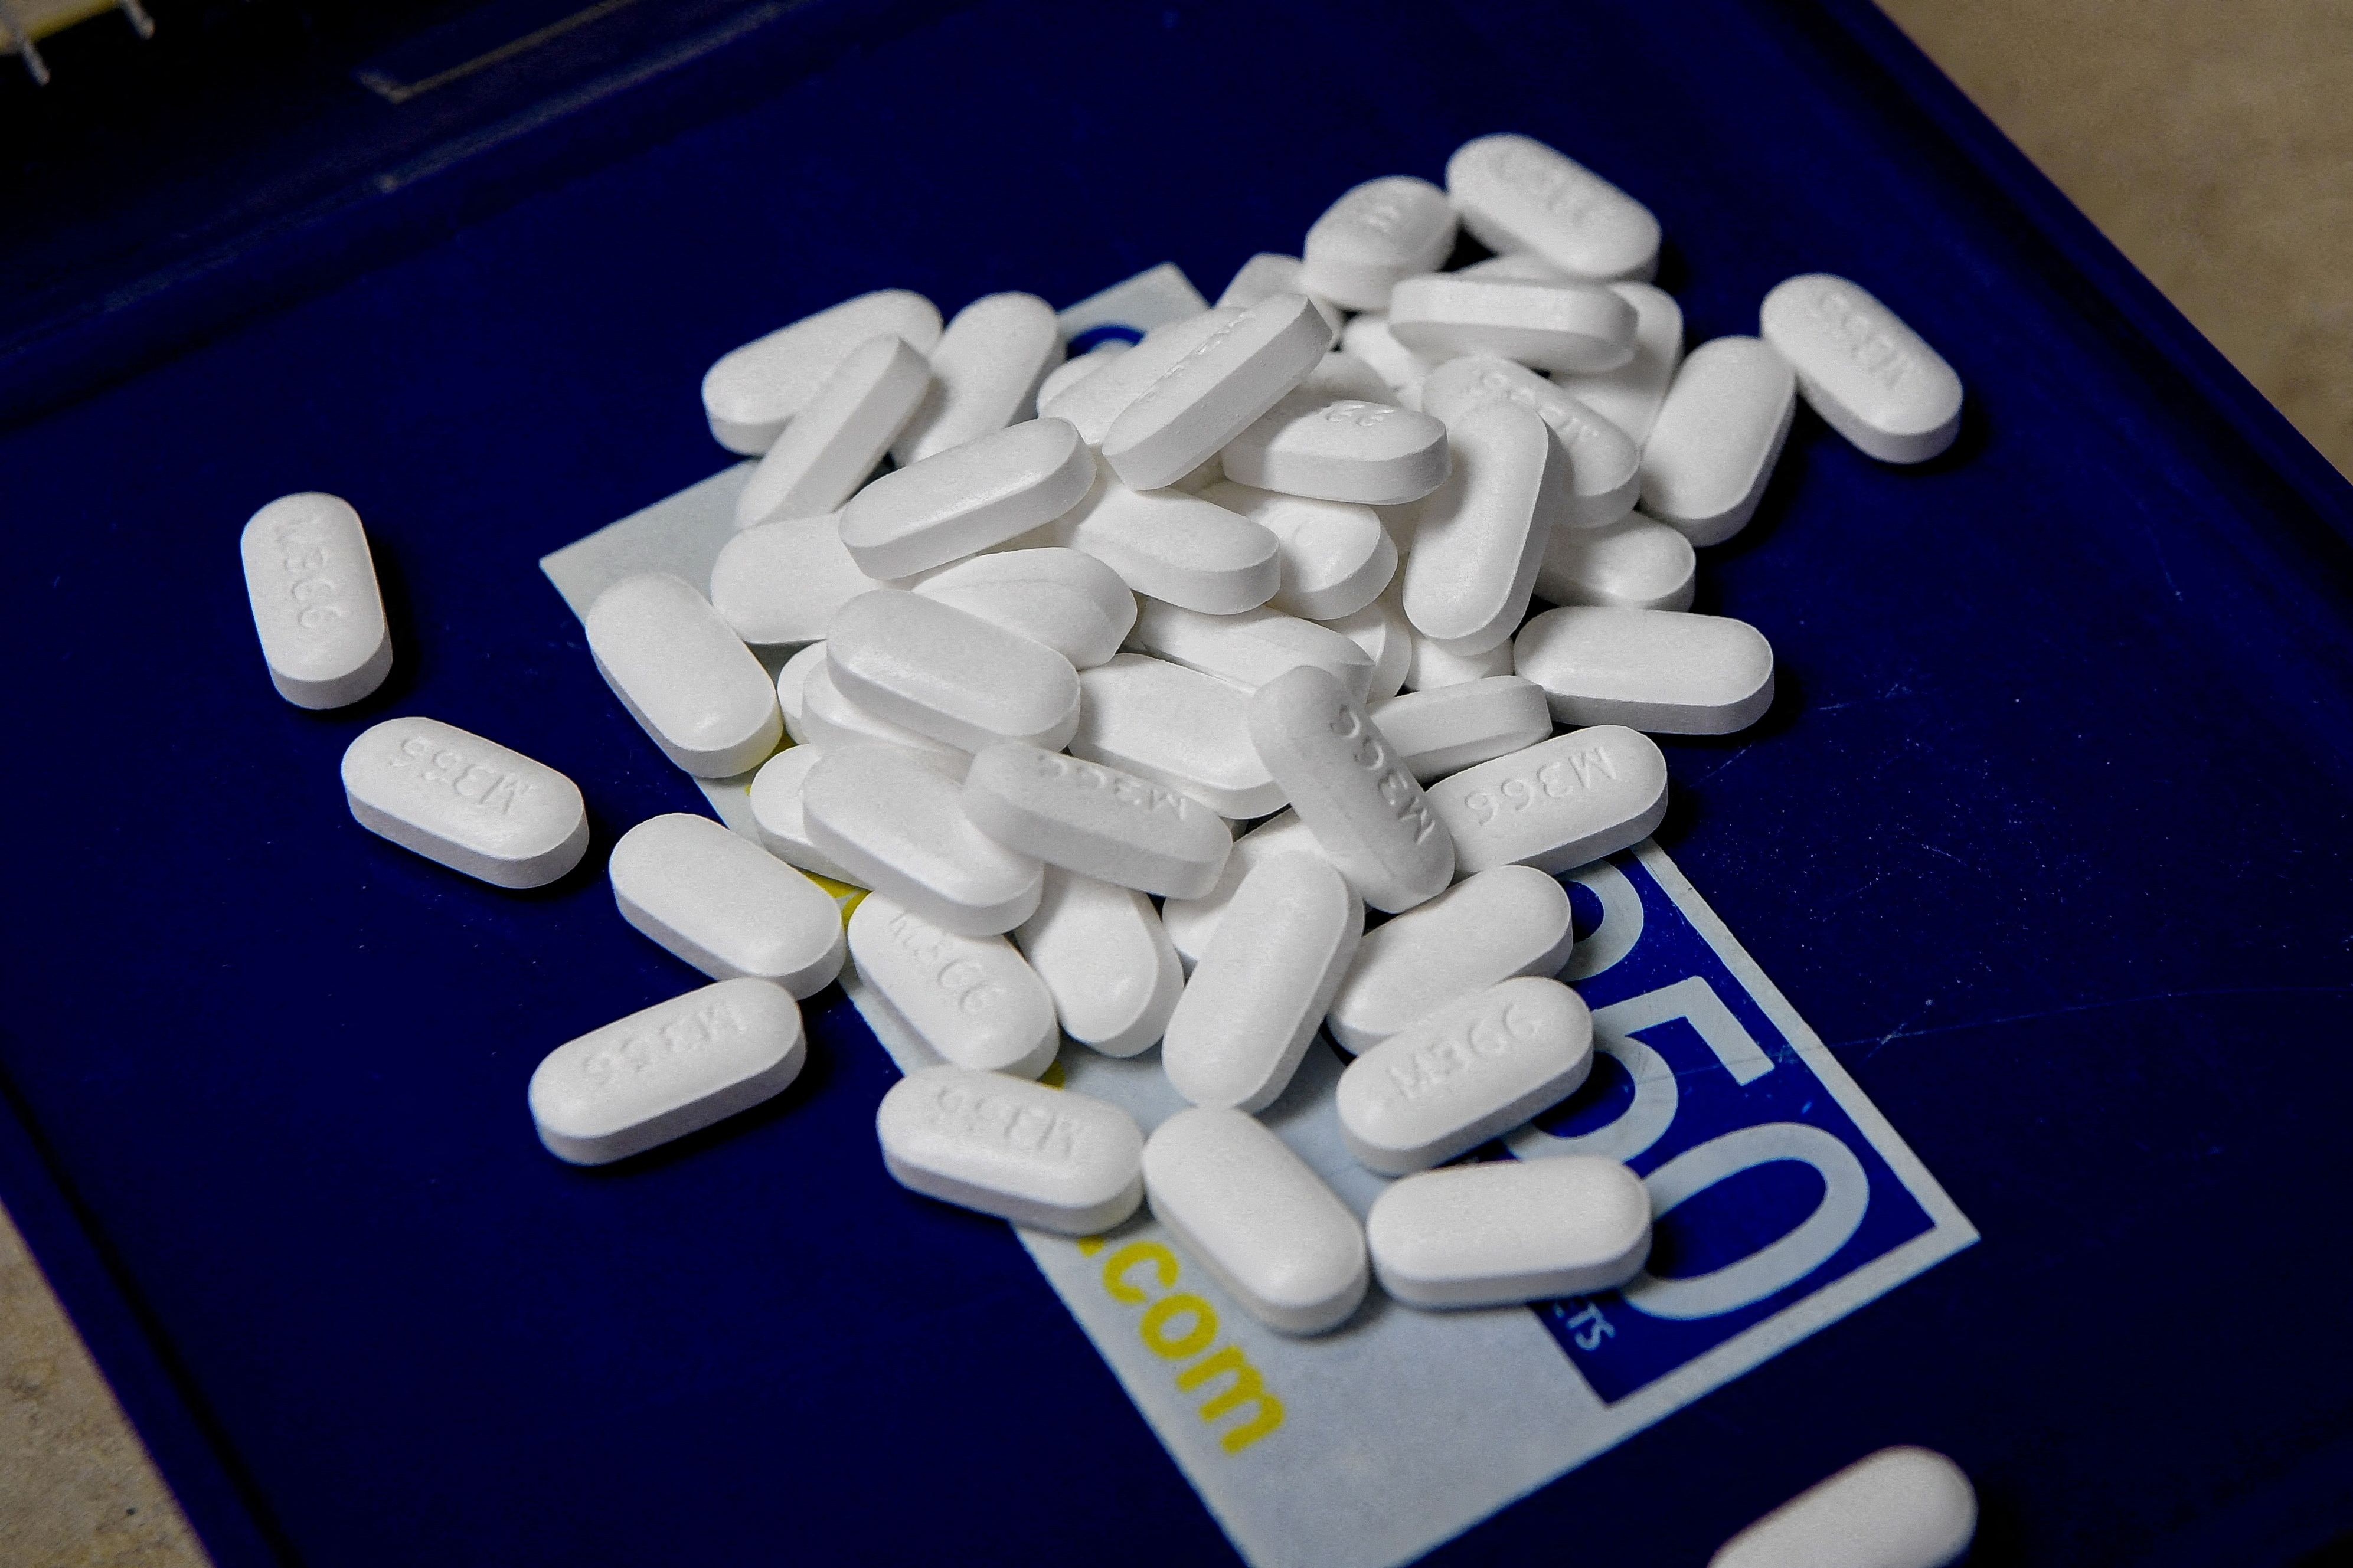 La justicia de Ohio condenó a tres cadenas de farmacias a pagar USD 650 millones por contribuir a la crisis de los opioides